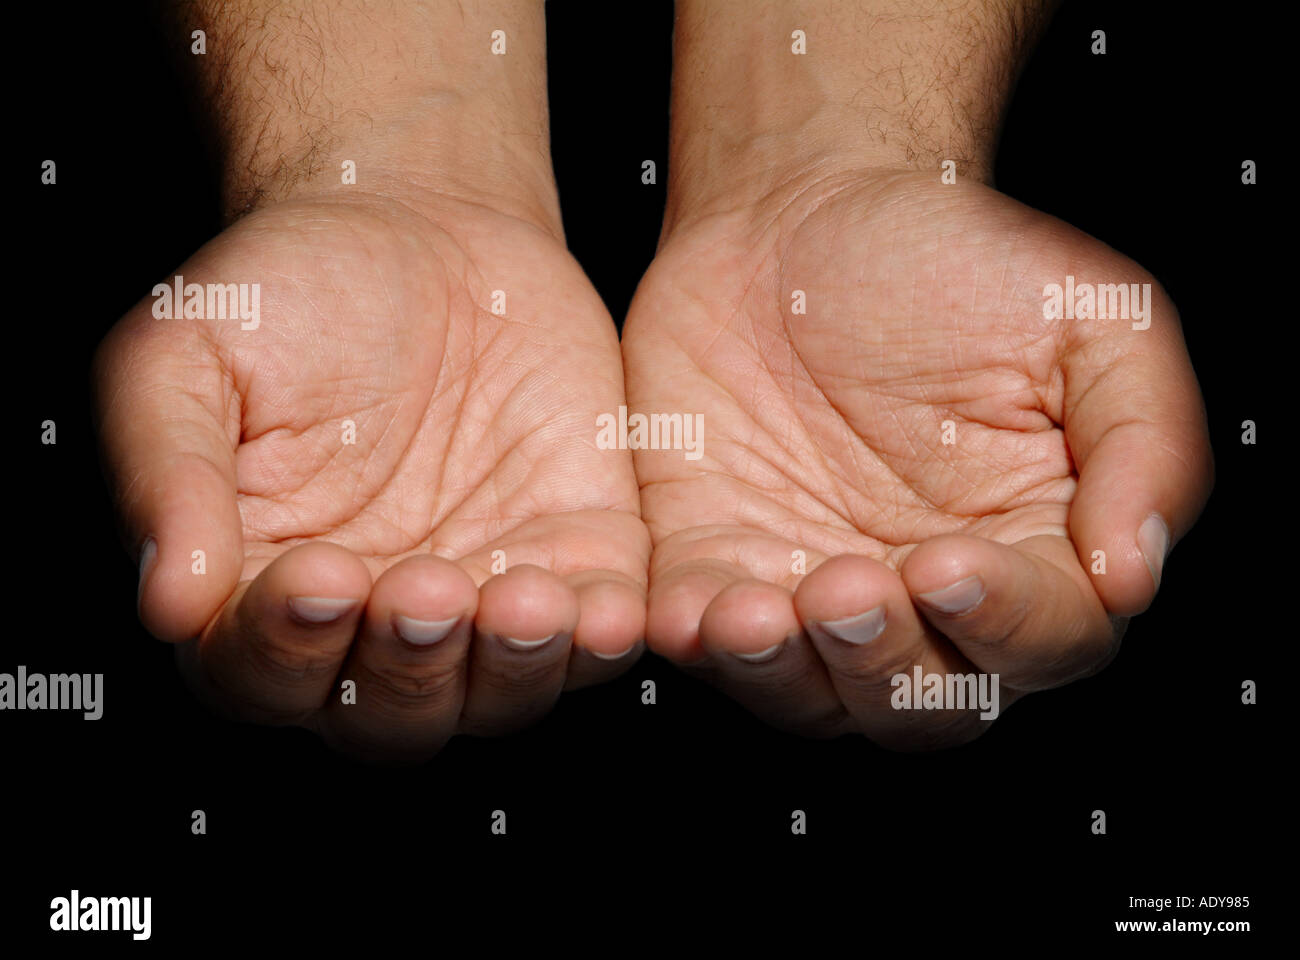 Hände-Person, die Menschen in der Nähe hautnah Hand Finger Finger Handgelenk Daumen Daumen Nägel, die weißes Schild Haut betteln betteln Fragen fordern Sie bitte wieder Stockfoto